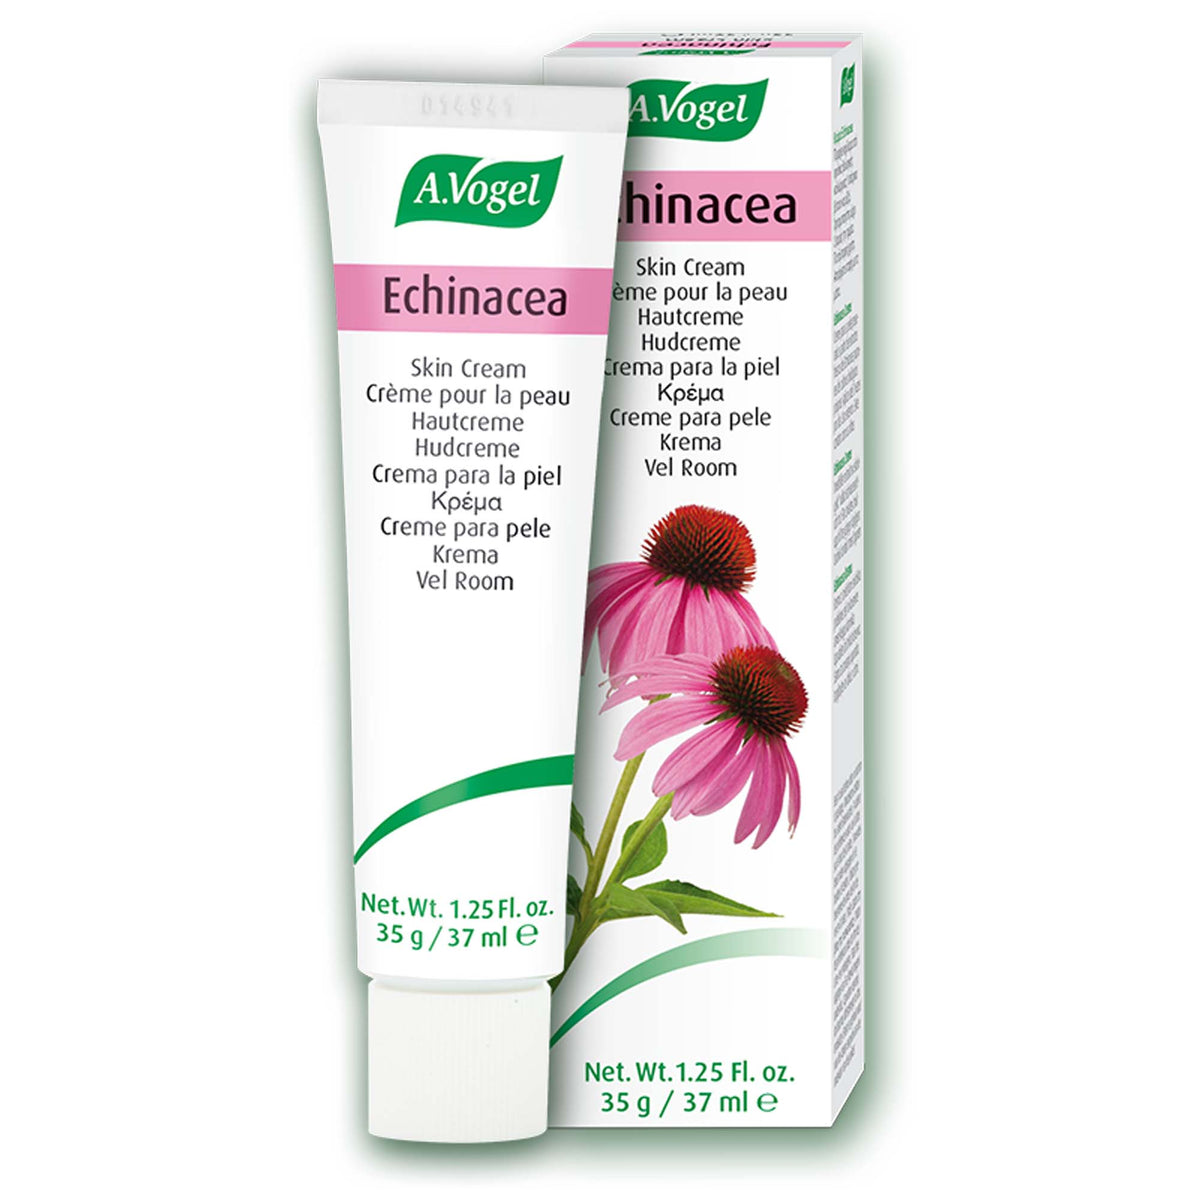 Echinacea Skin Cream 35 gr - A.Vogel Canada